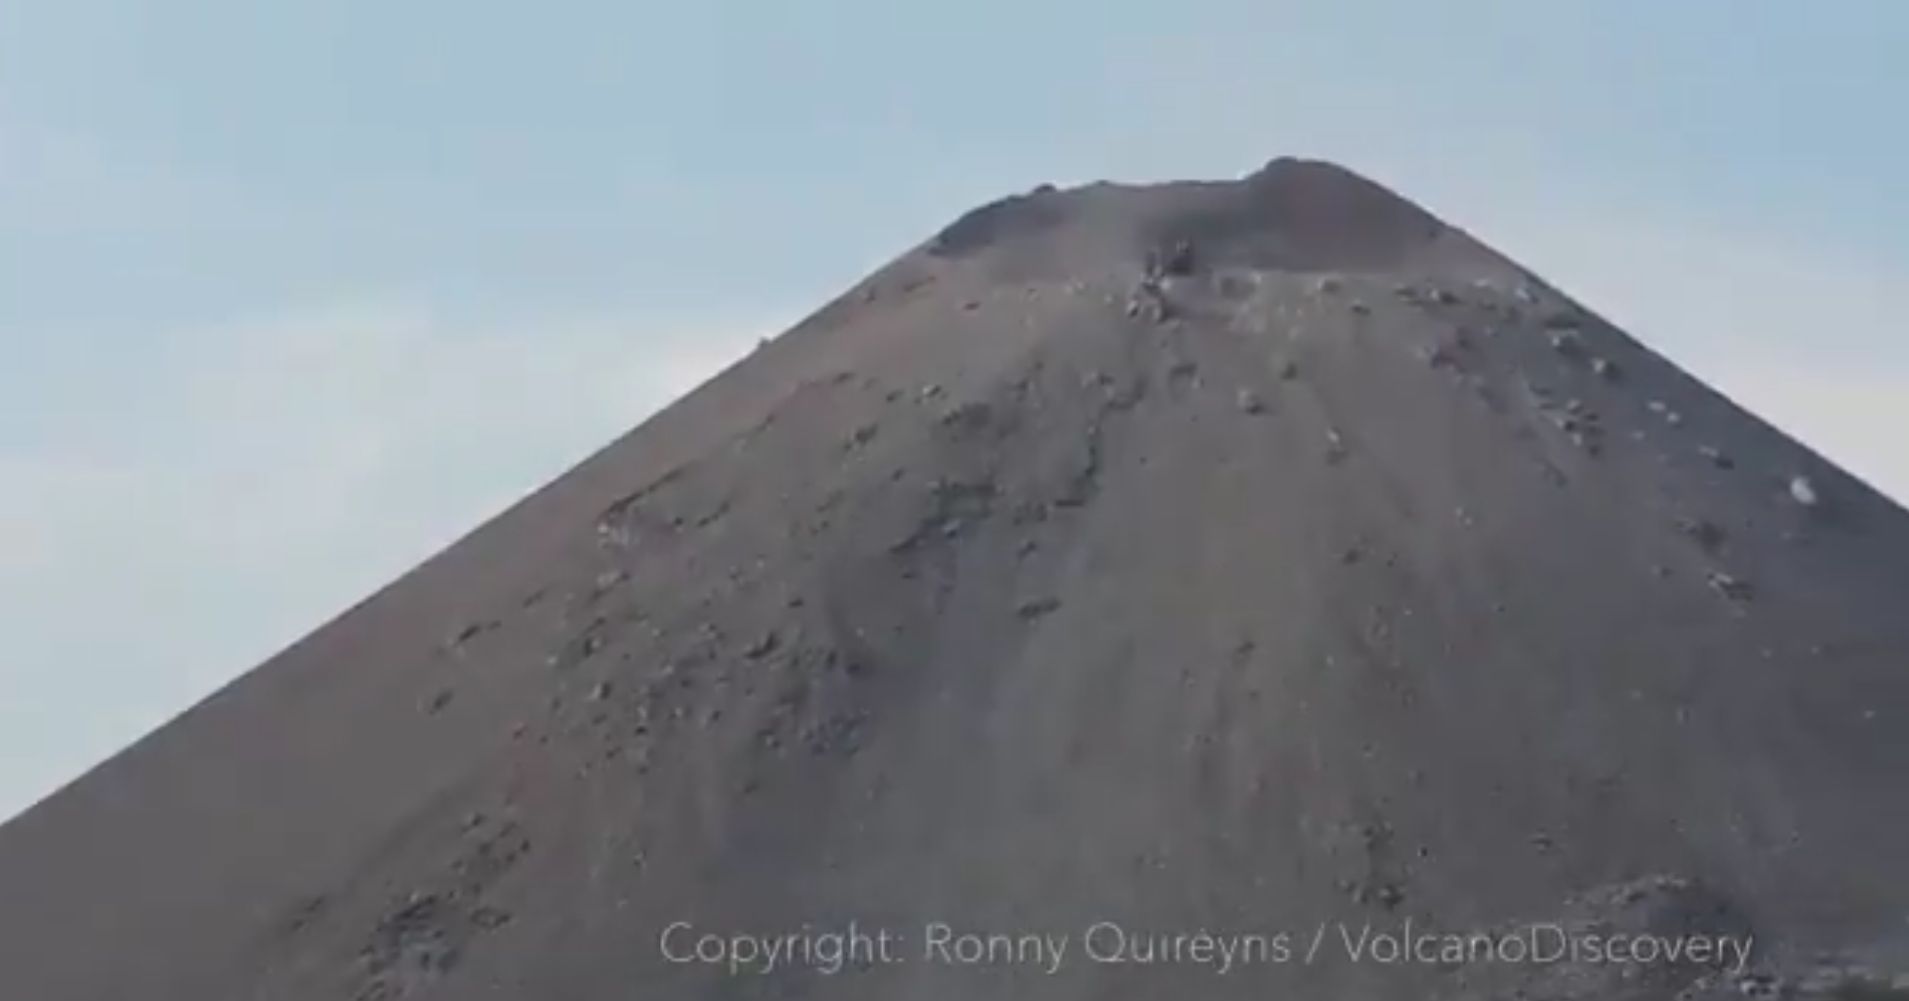 Scena jak z apokalipsy. Kamery uchwyciły moment erupcji wulkanu w Indonezji